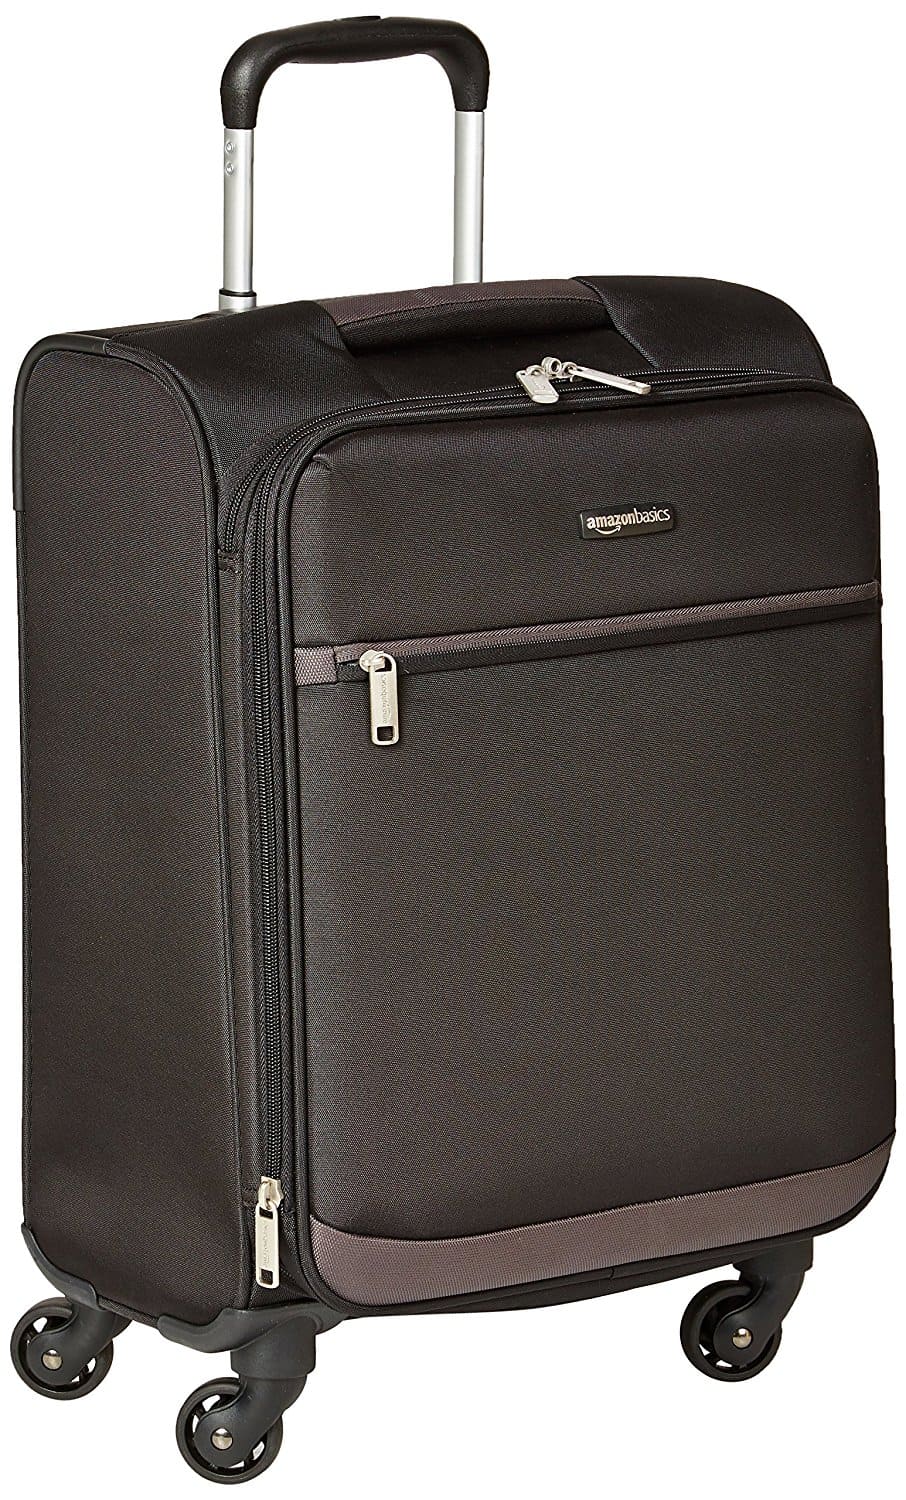 Amazon Basics Luggage